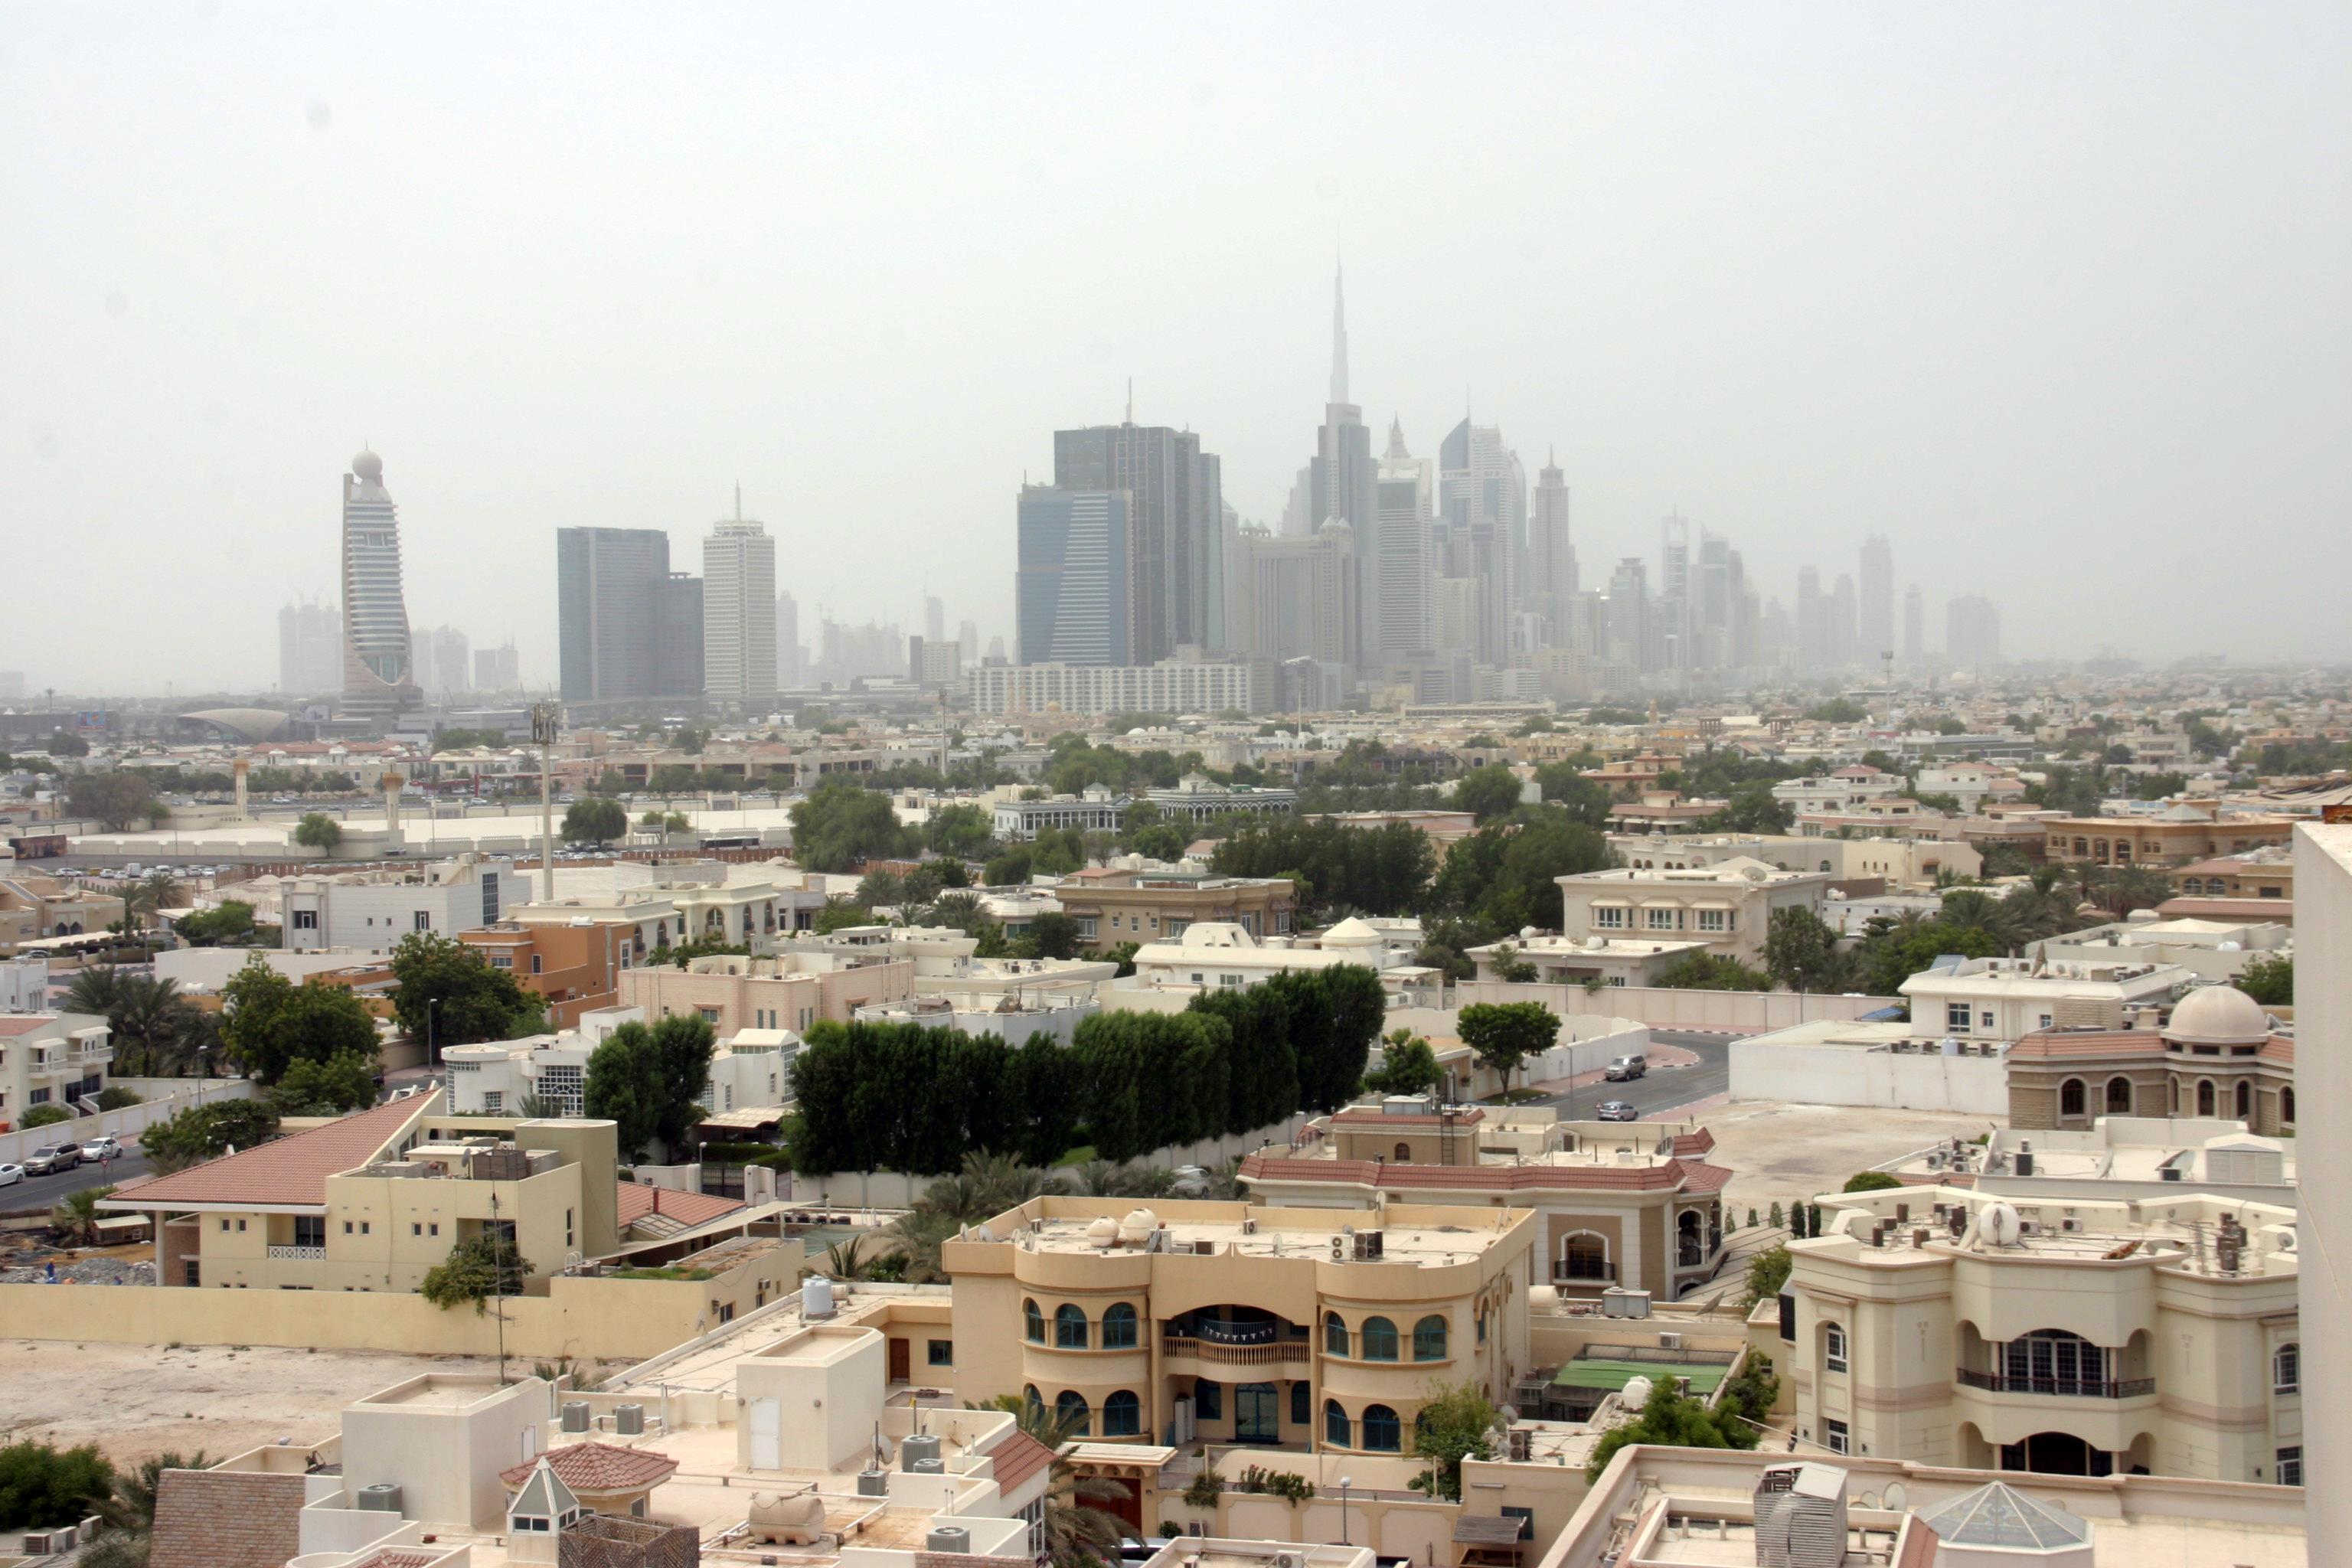 A Sheik Zayed Road felhőkarcolói a Bur Dubai ( = Régi Dubaj) városnegyedből nézve